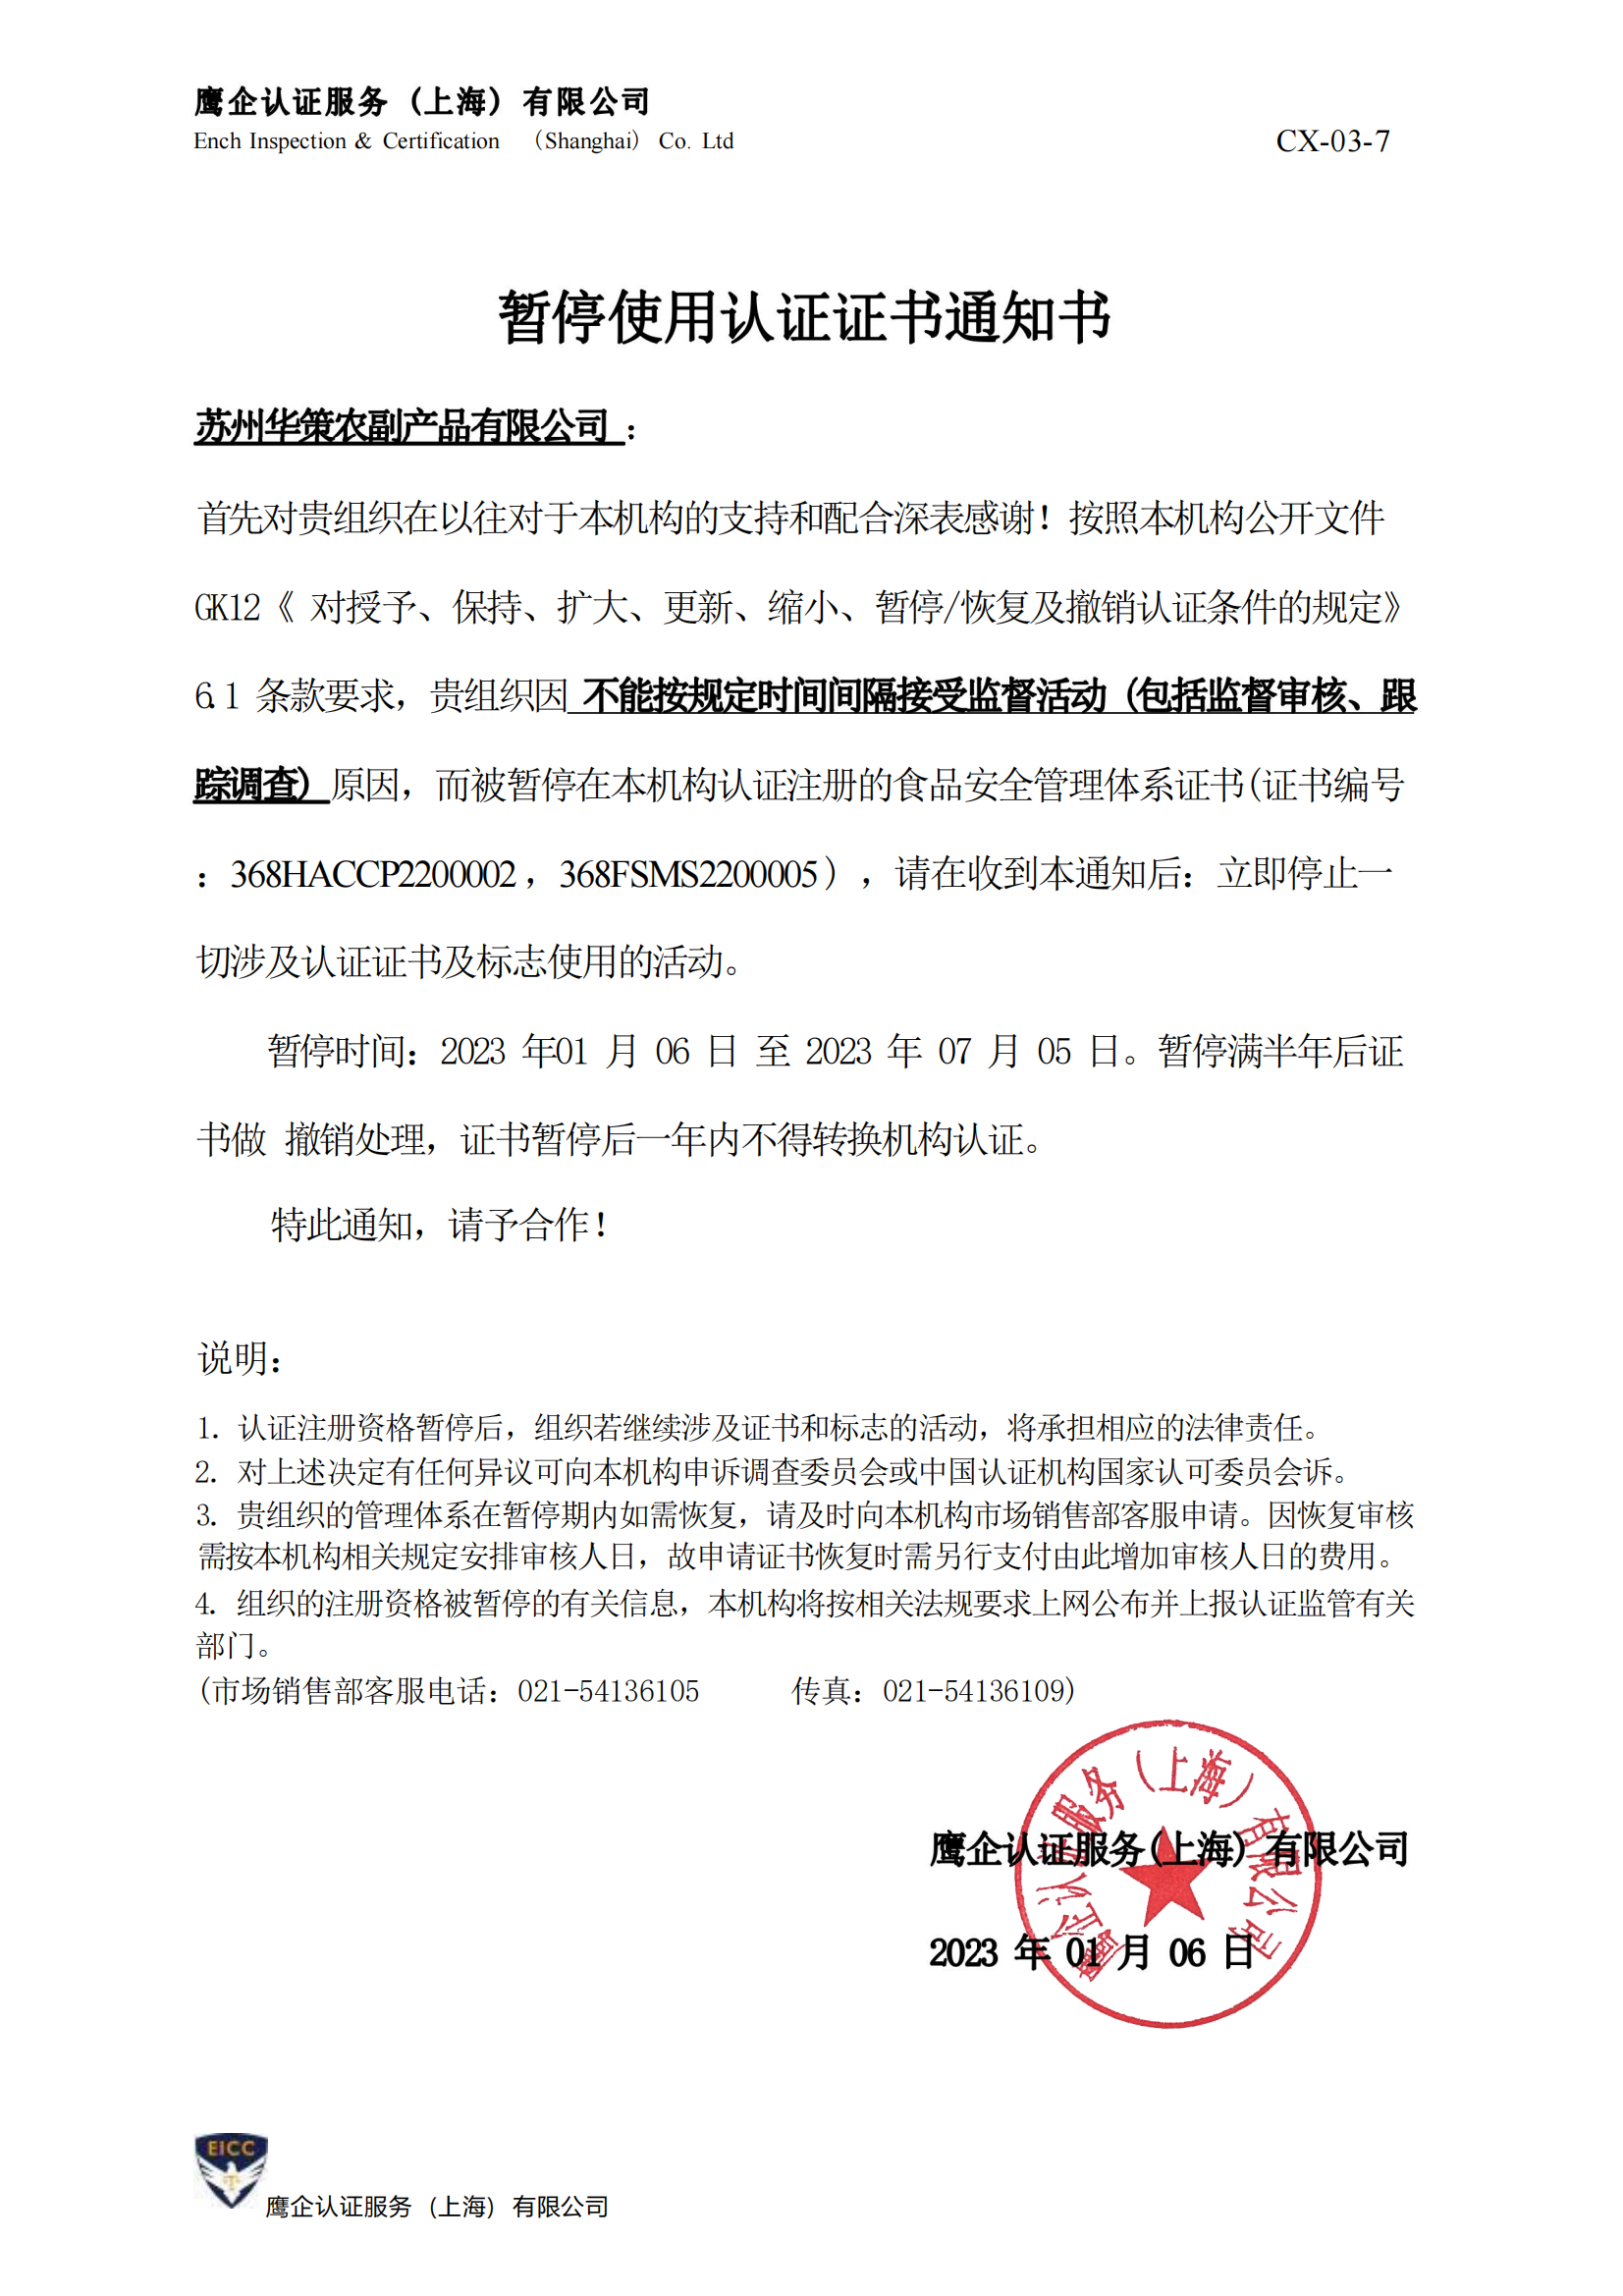 苏州华策农副产品有限公司-暂停使用认证证书通知书_00.png